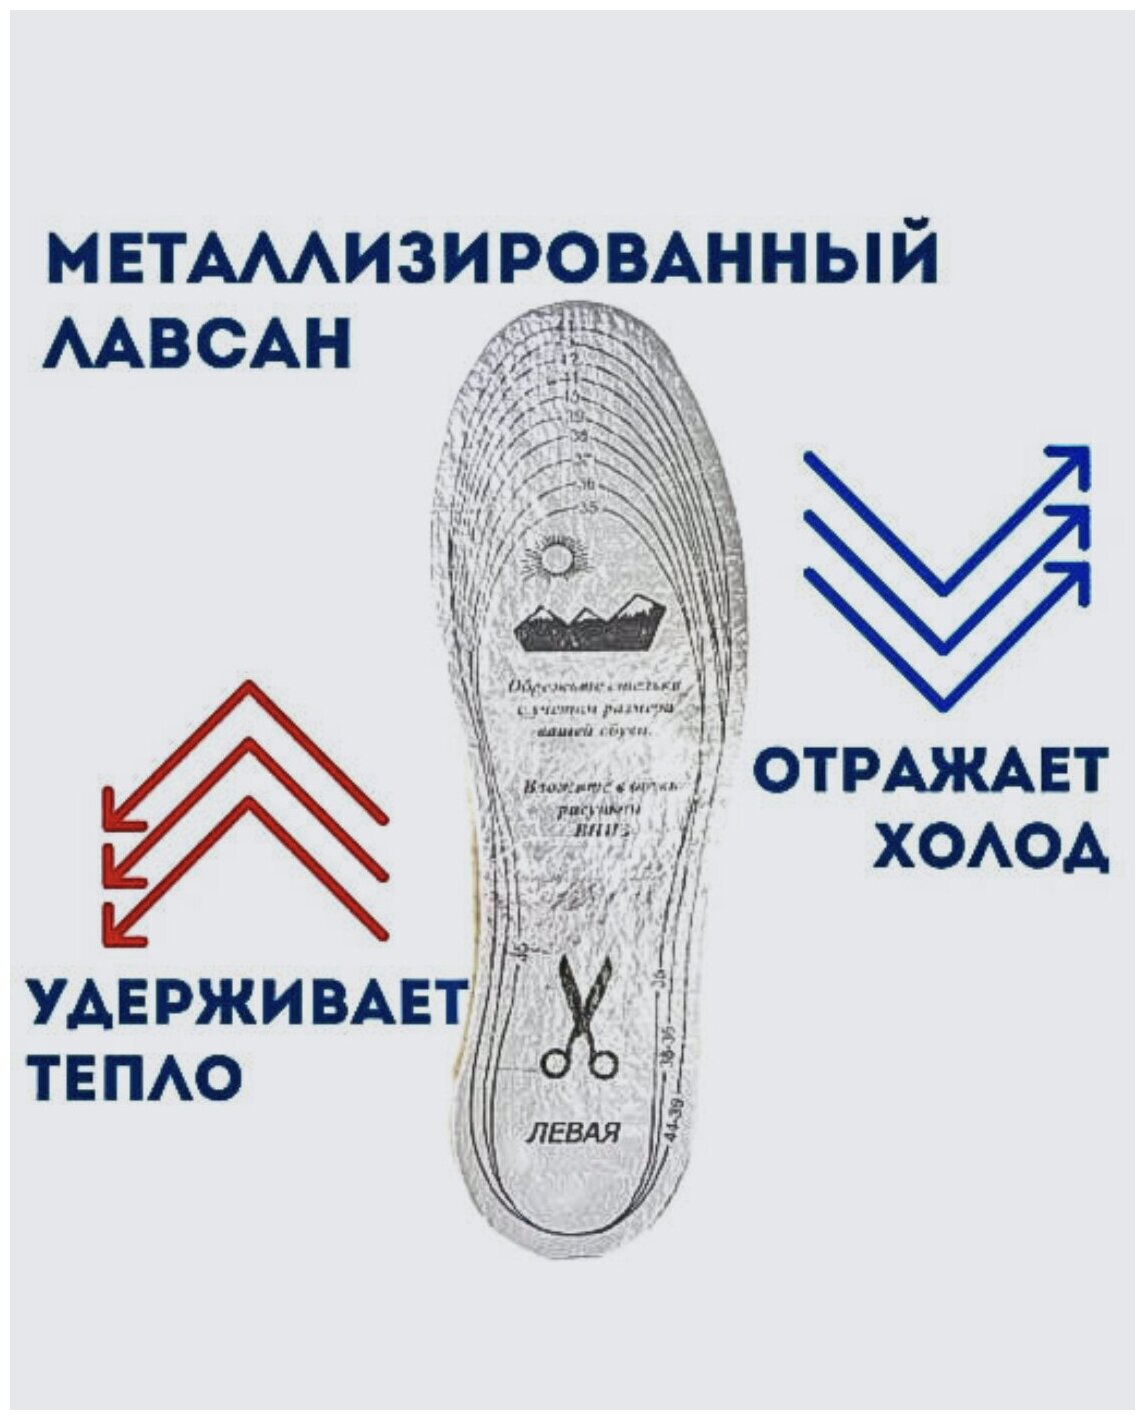 Стельки для обуви зимние"Люкс" Овечья шерсть.Металлизированный лавсан .Термостельки,Универсальный размер 35-45 - фотография № 7